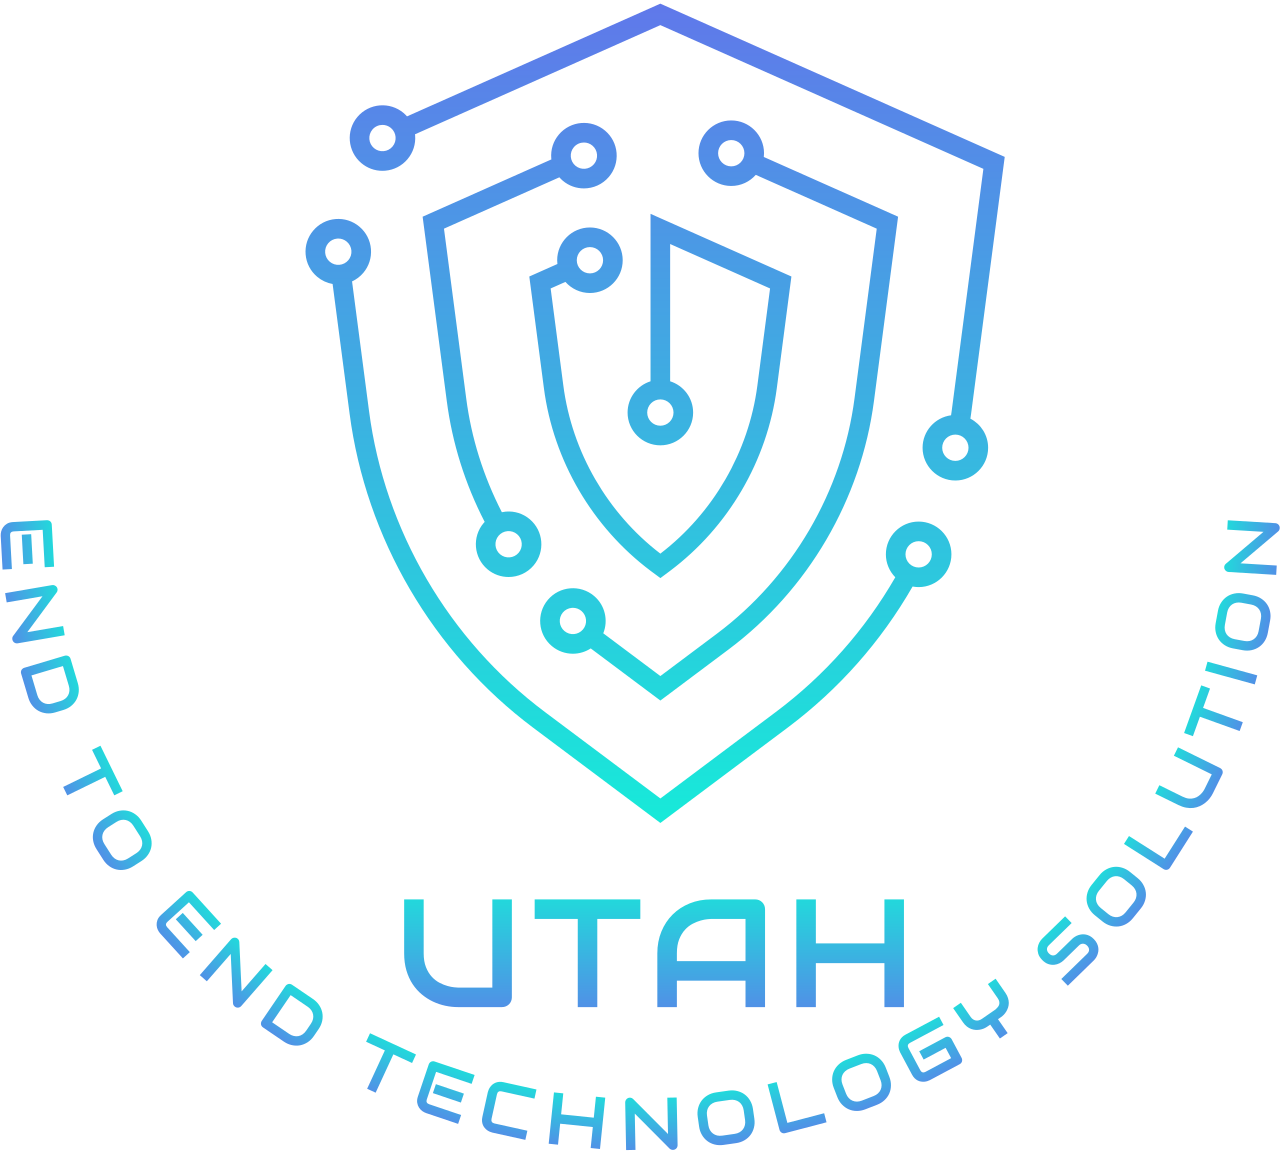 UTAH's logo